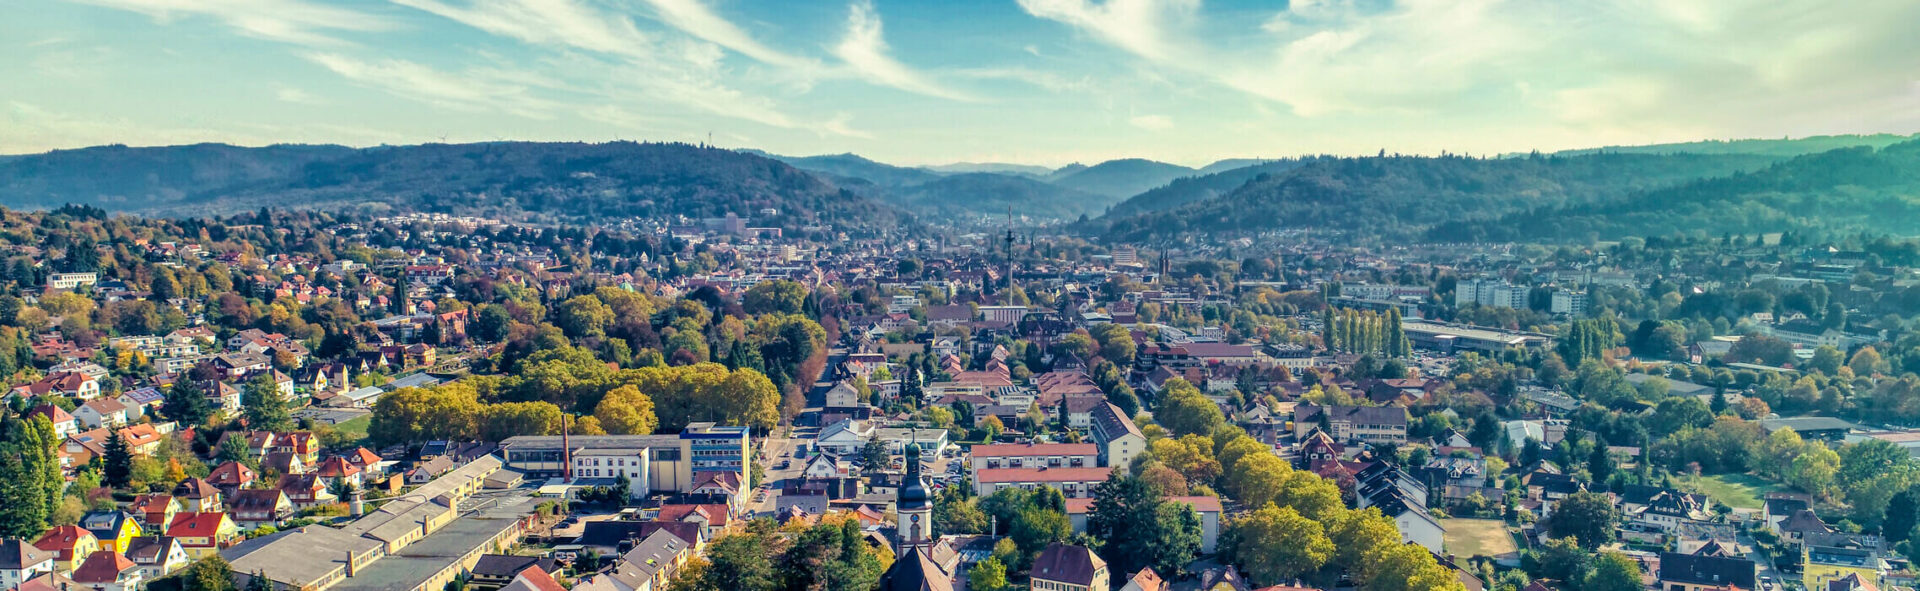 Immobilienpreise Lahr-Panorama von Lahr